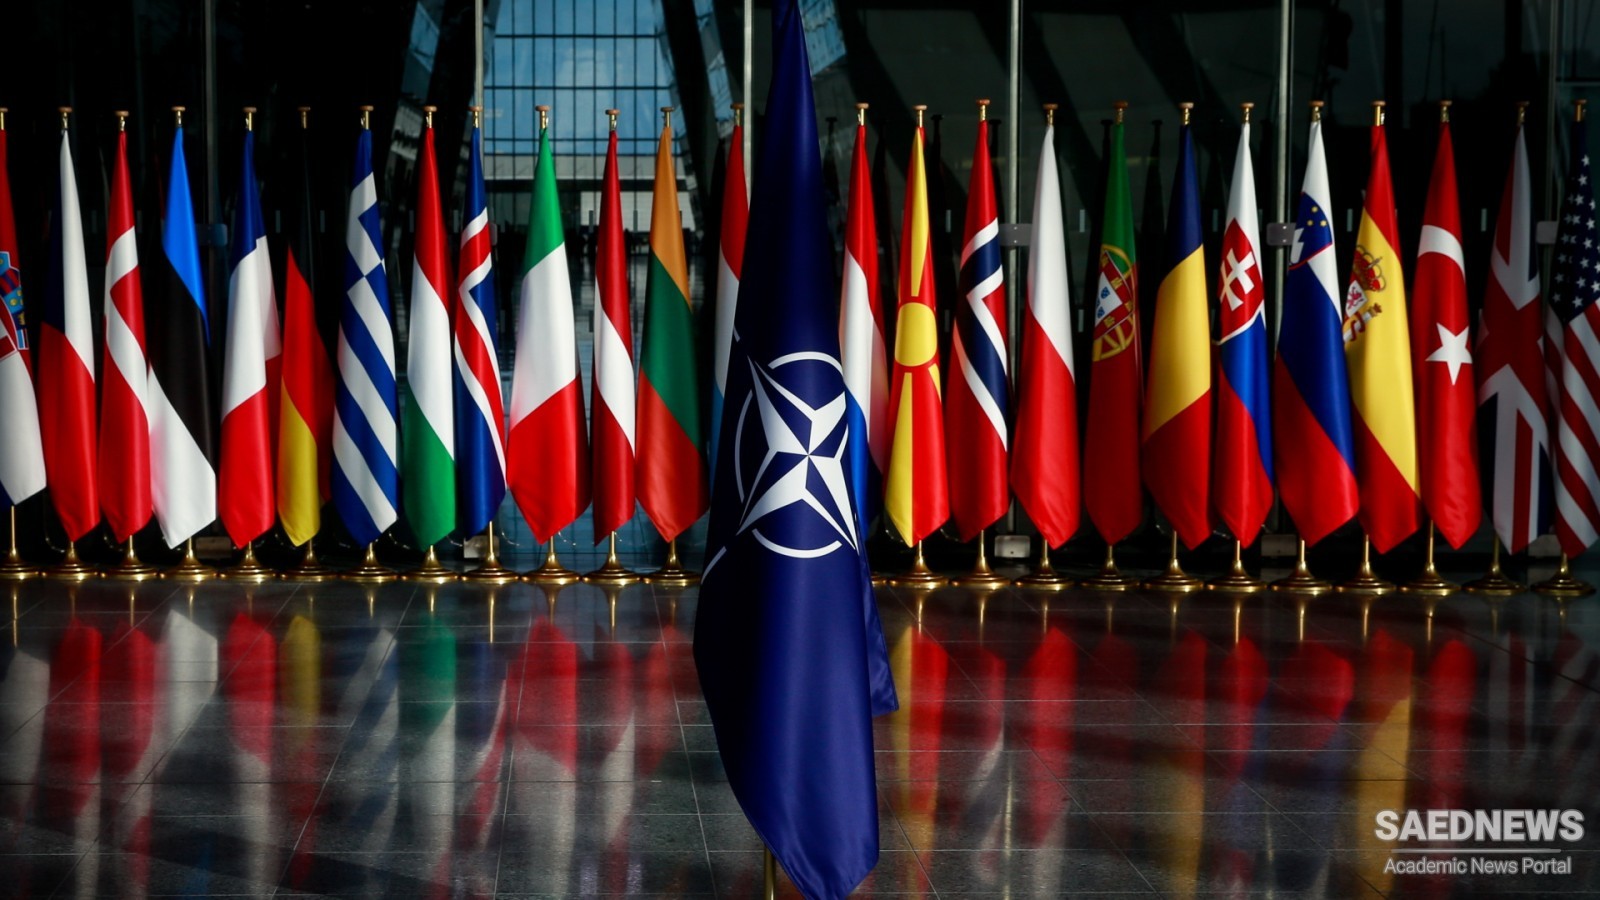 Russia claims it knows NATO’s true mission